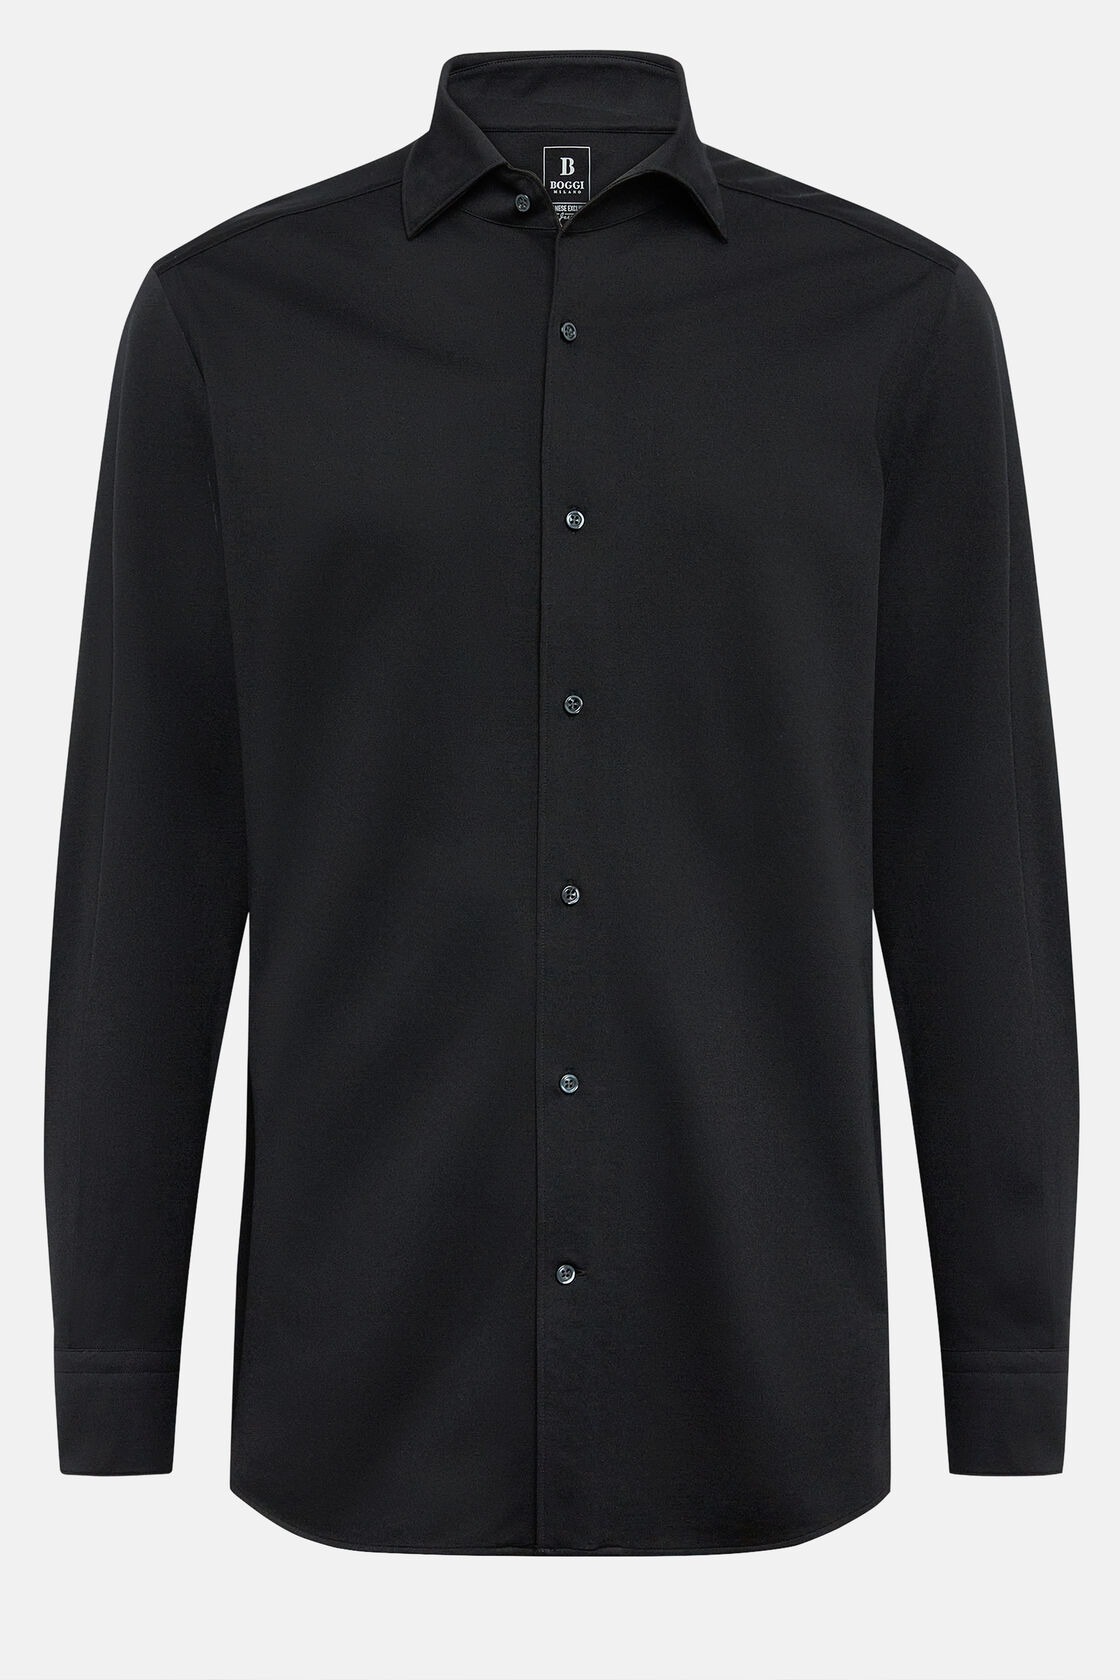 Bawełniana koszula polo z japońskiej dzianiny, klasyczny fason, Black, hi-res